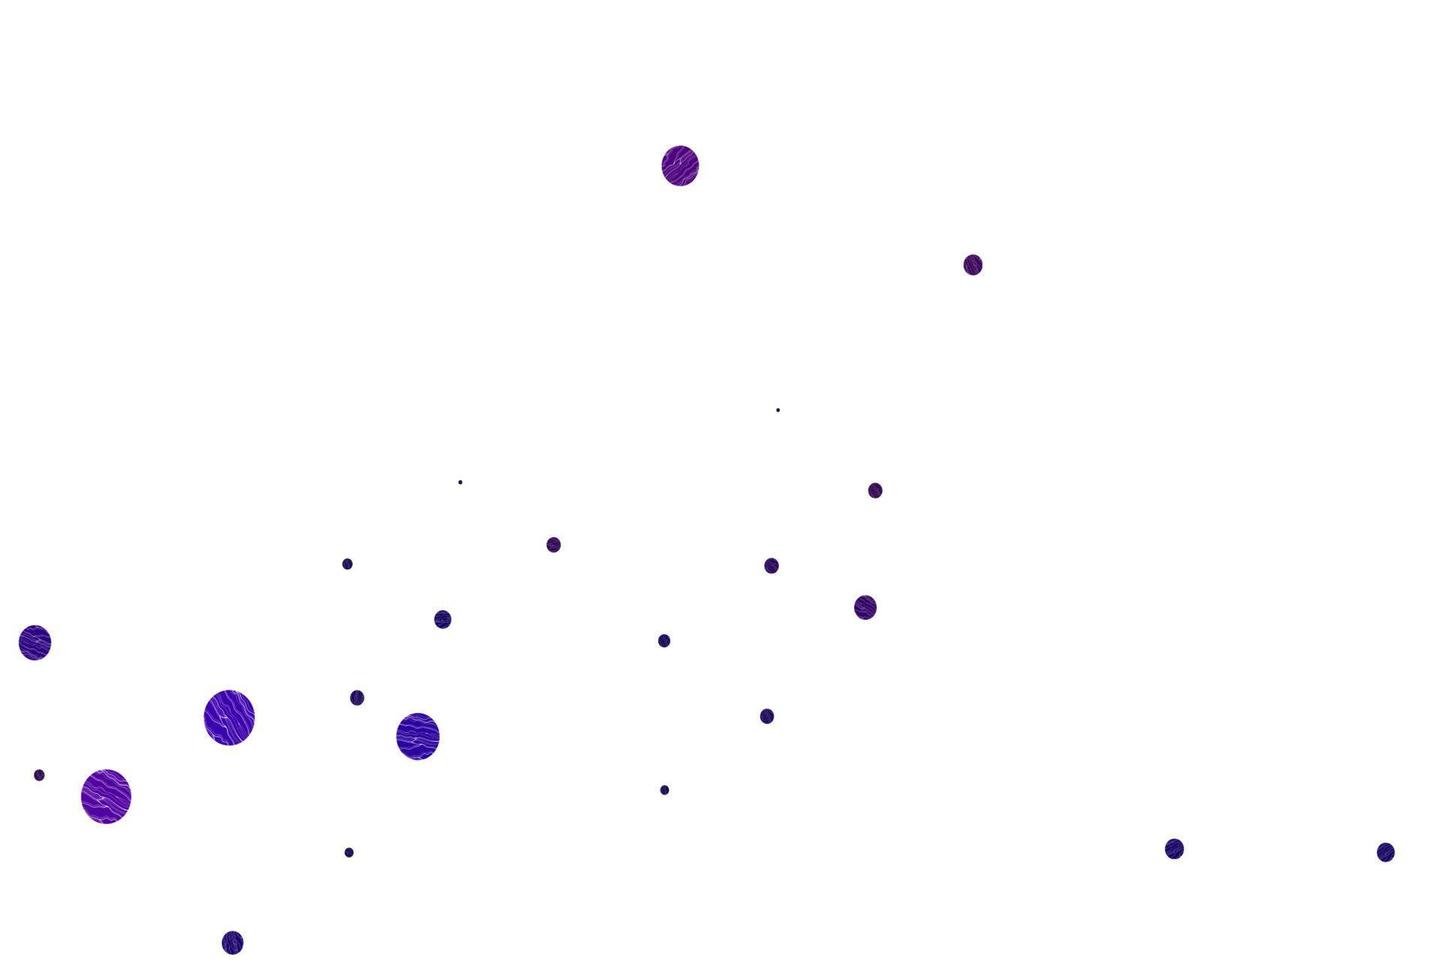 Fondo de vector púrpura claro con burbujas.